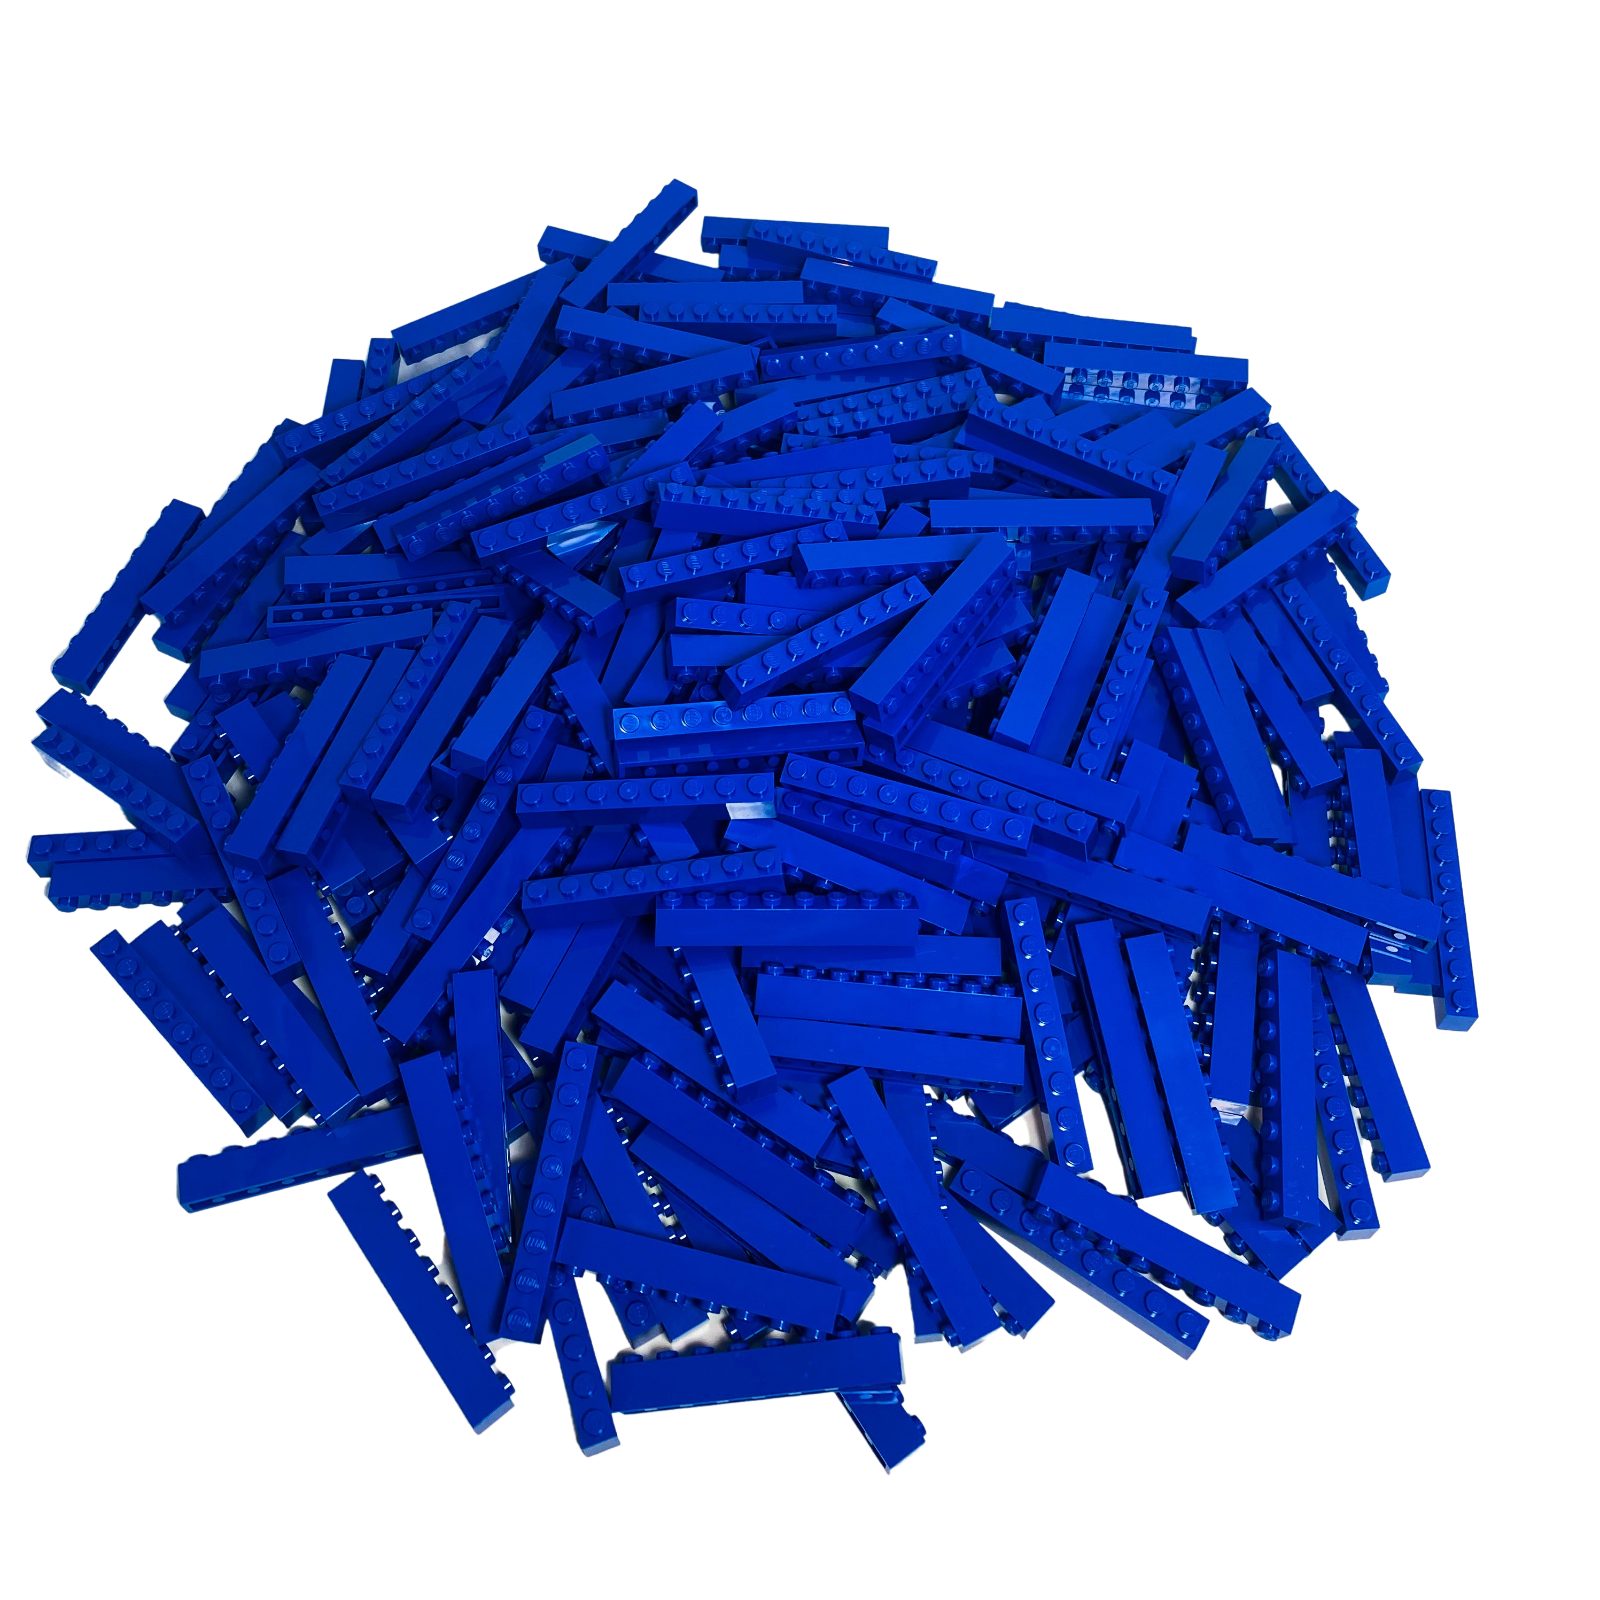 LEGO® Spielbausteine LEGO® 1x8 Steine Hochsteine Blau - 3008 NEU! Menge 50x, (Creativ-Set, 50 St), Made in Europe